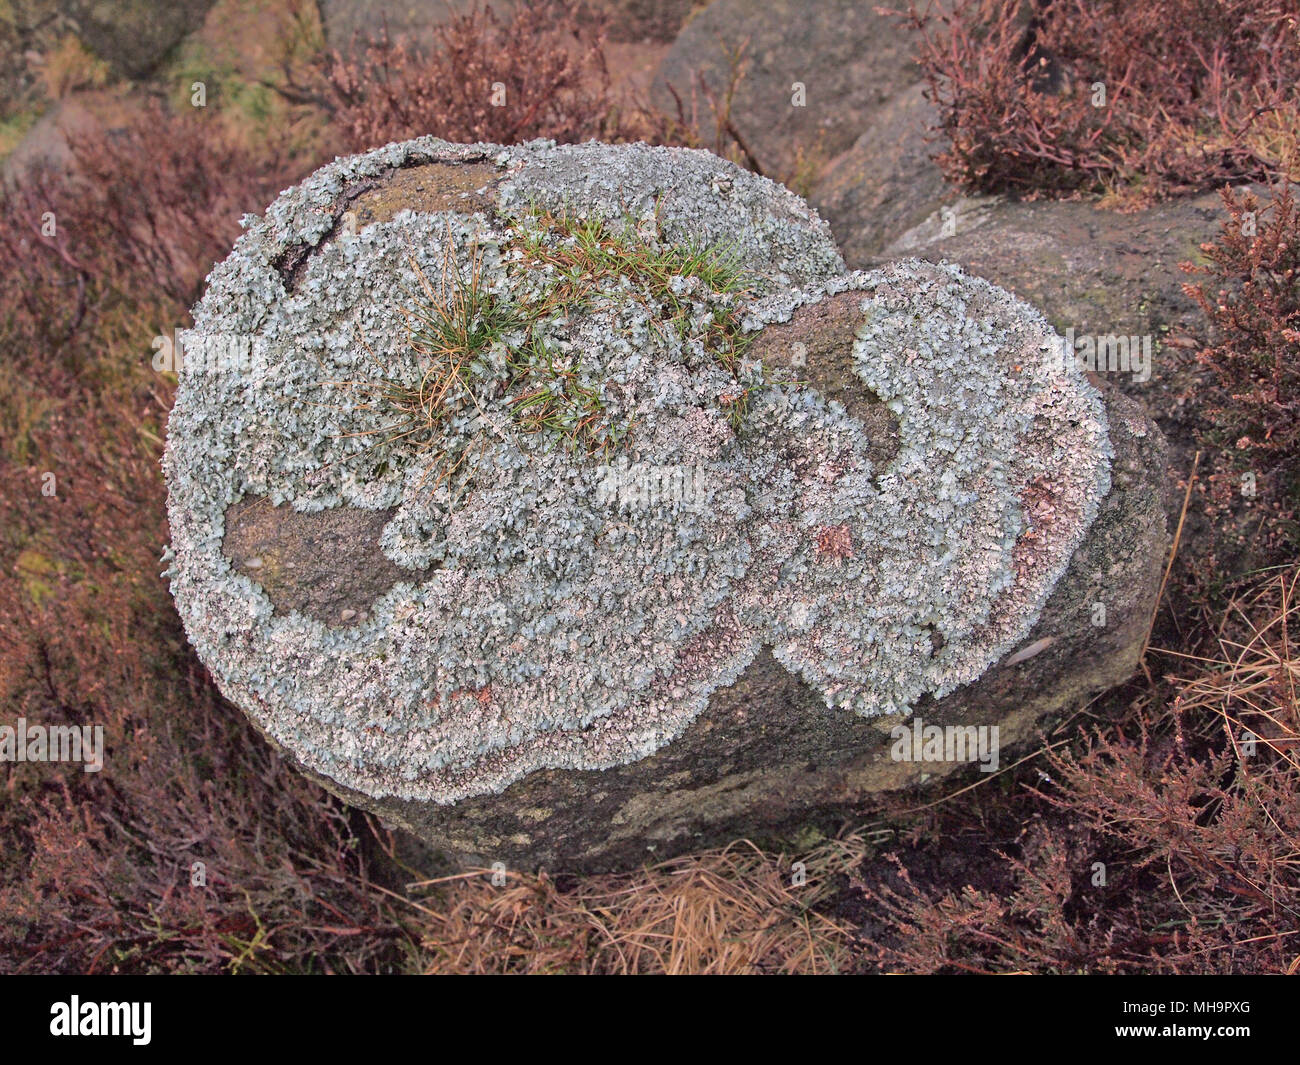 Green lichen on rock, Parmelia Sulcata, Edale, Derbyshire Stock Photo